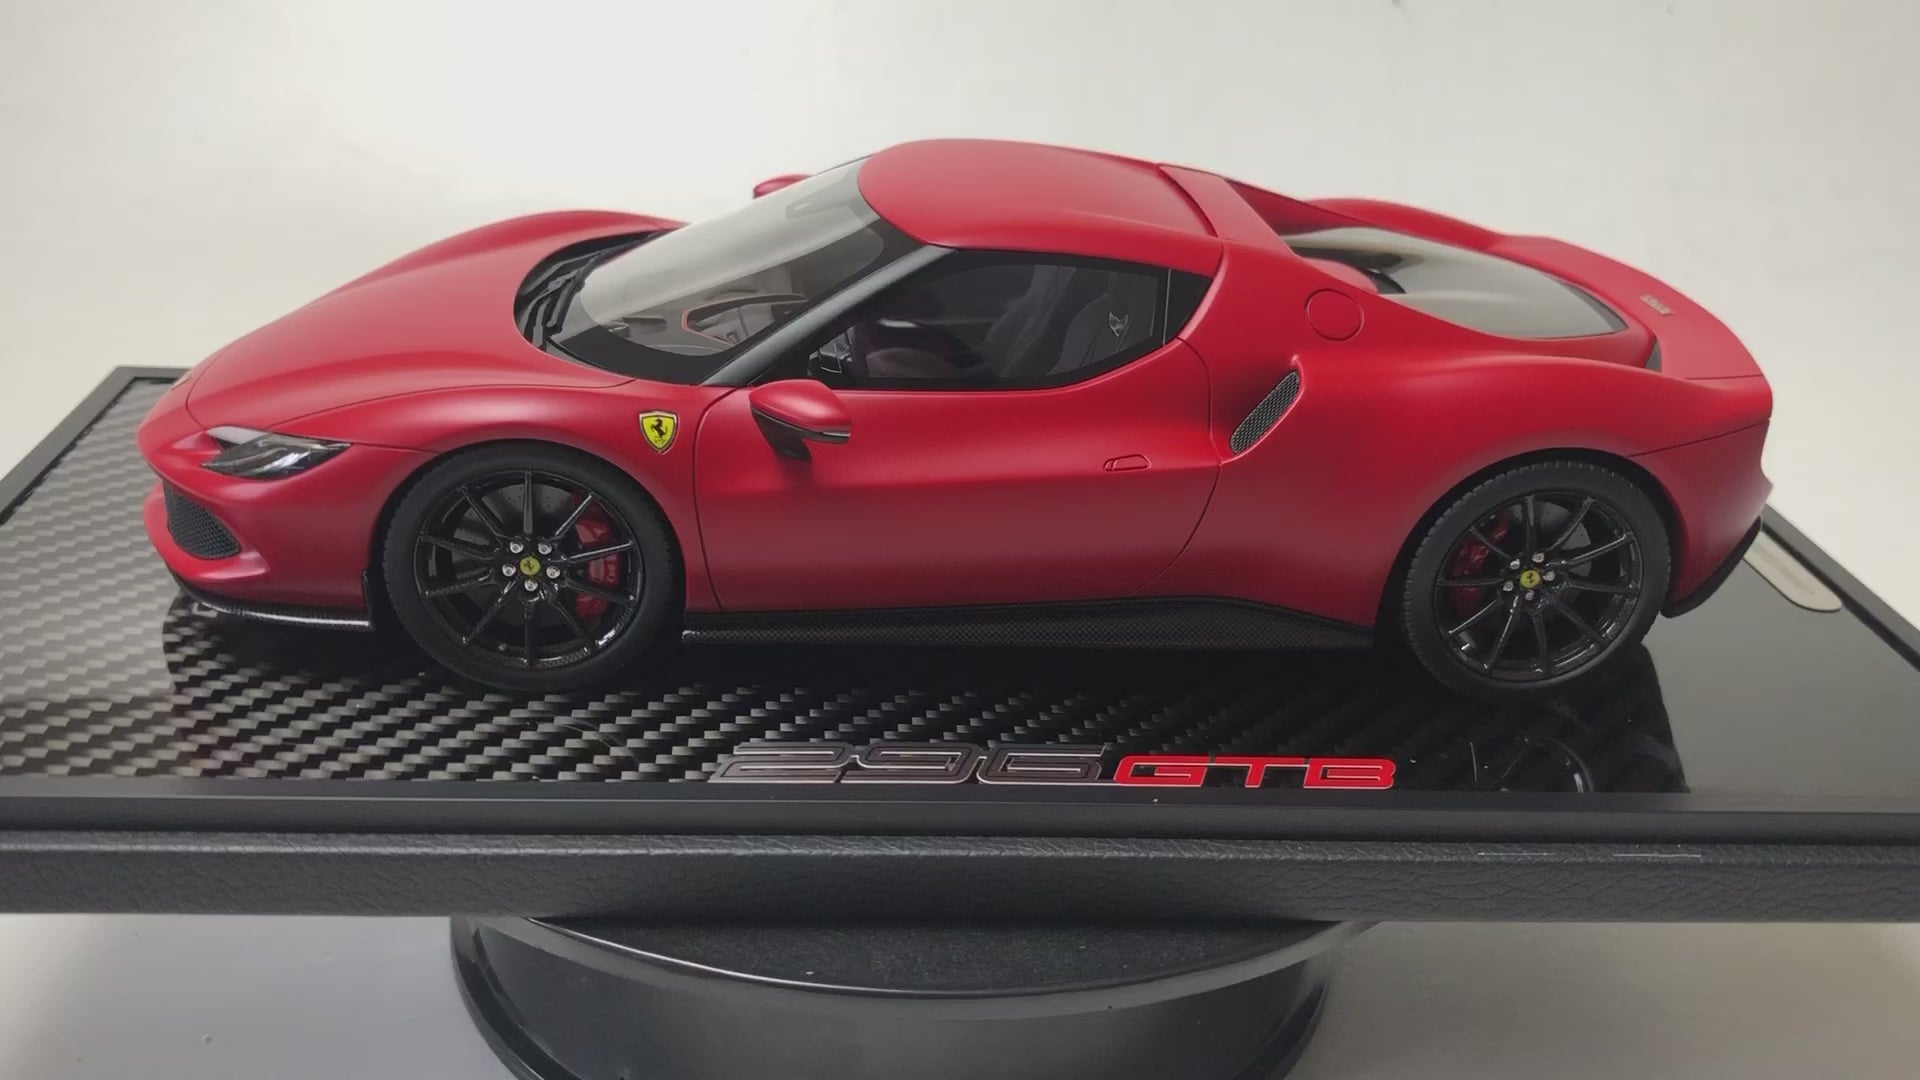 BBR Ferrari SF90 escala 1:18